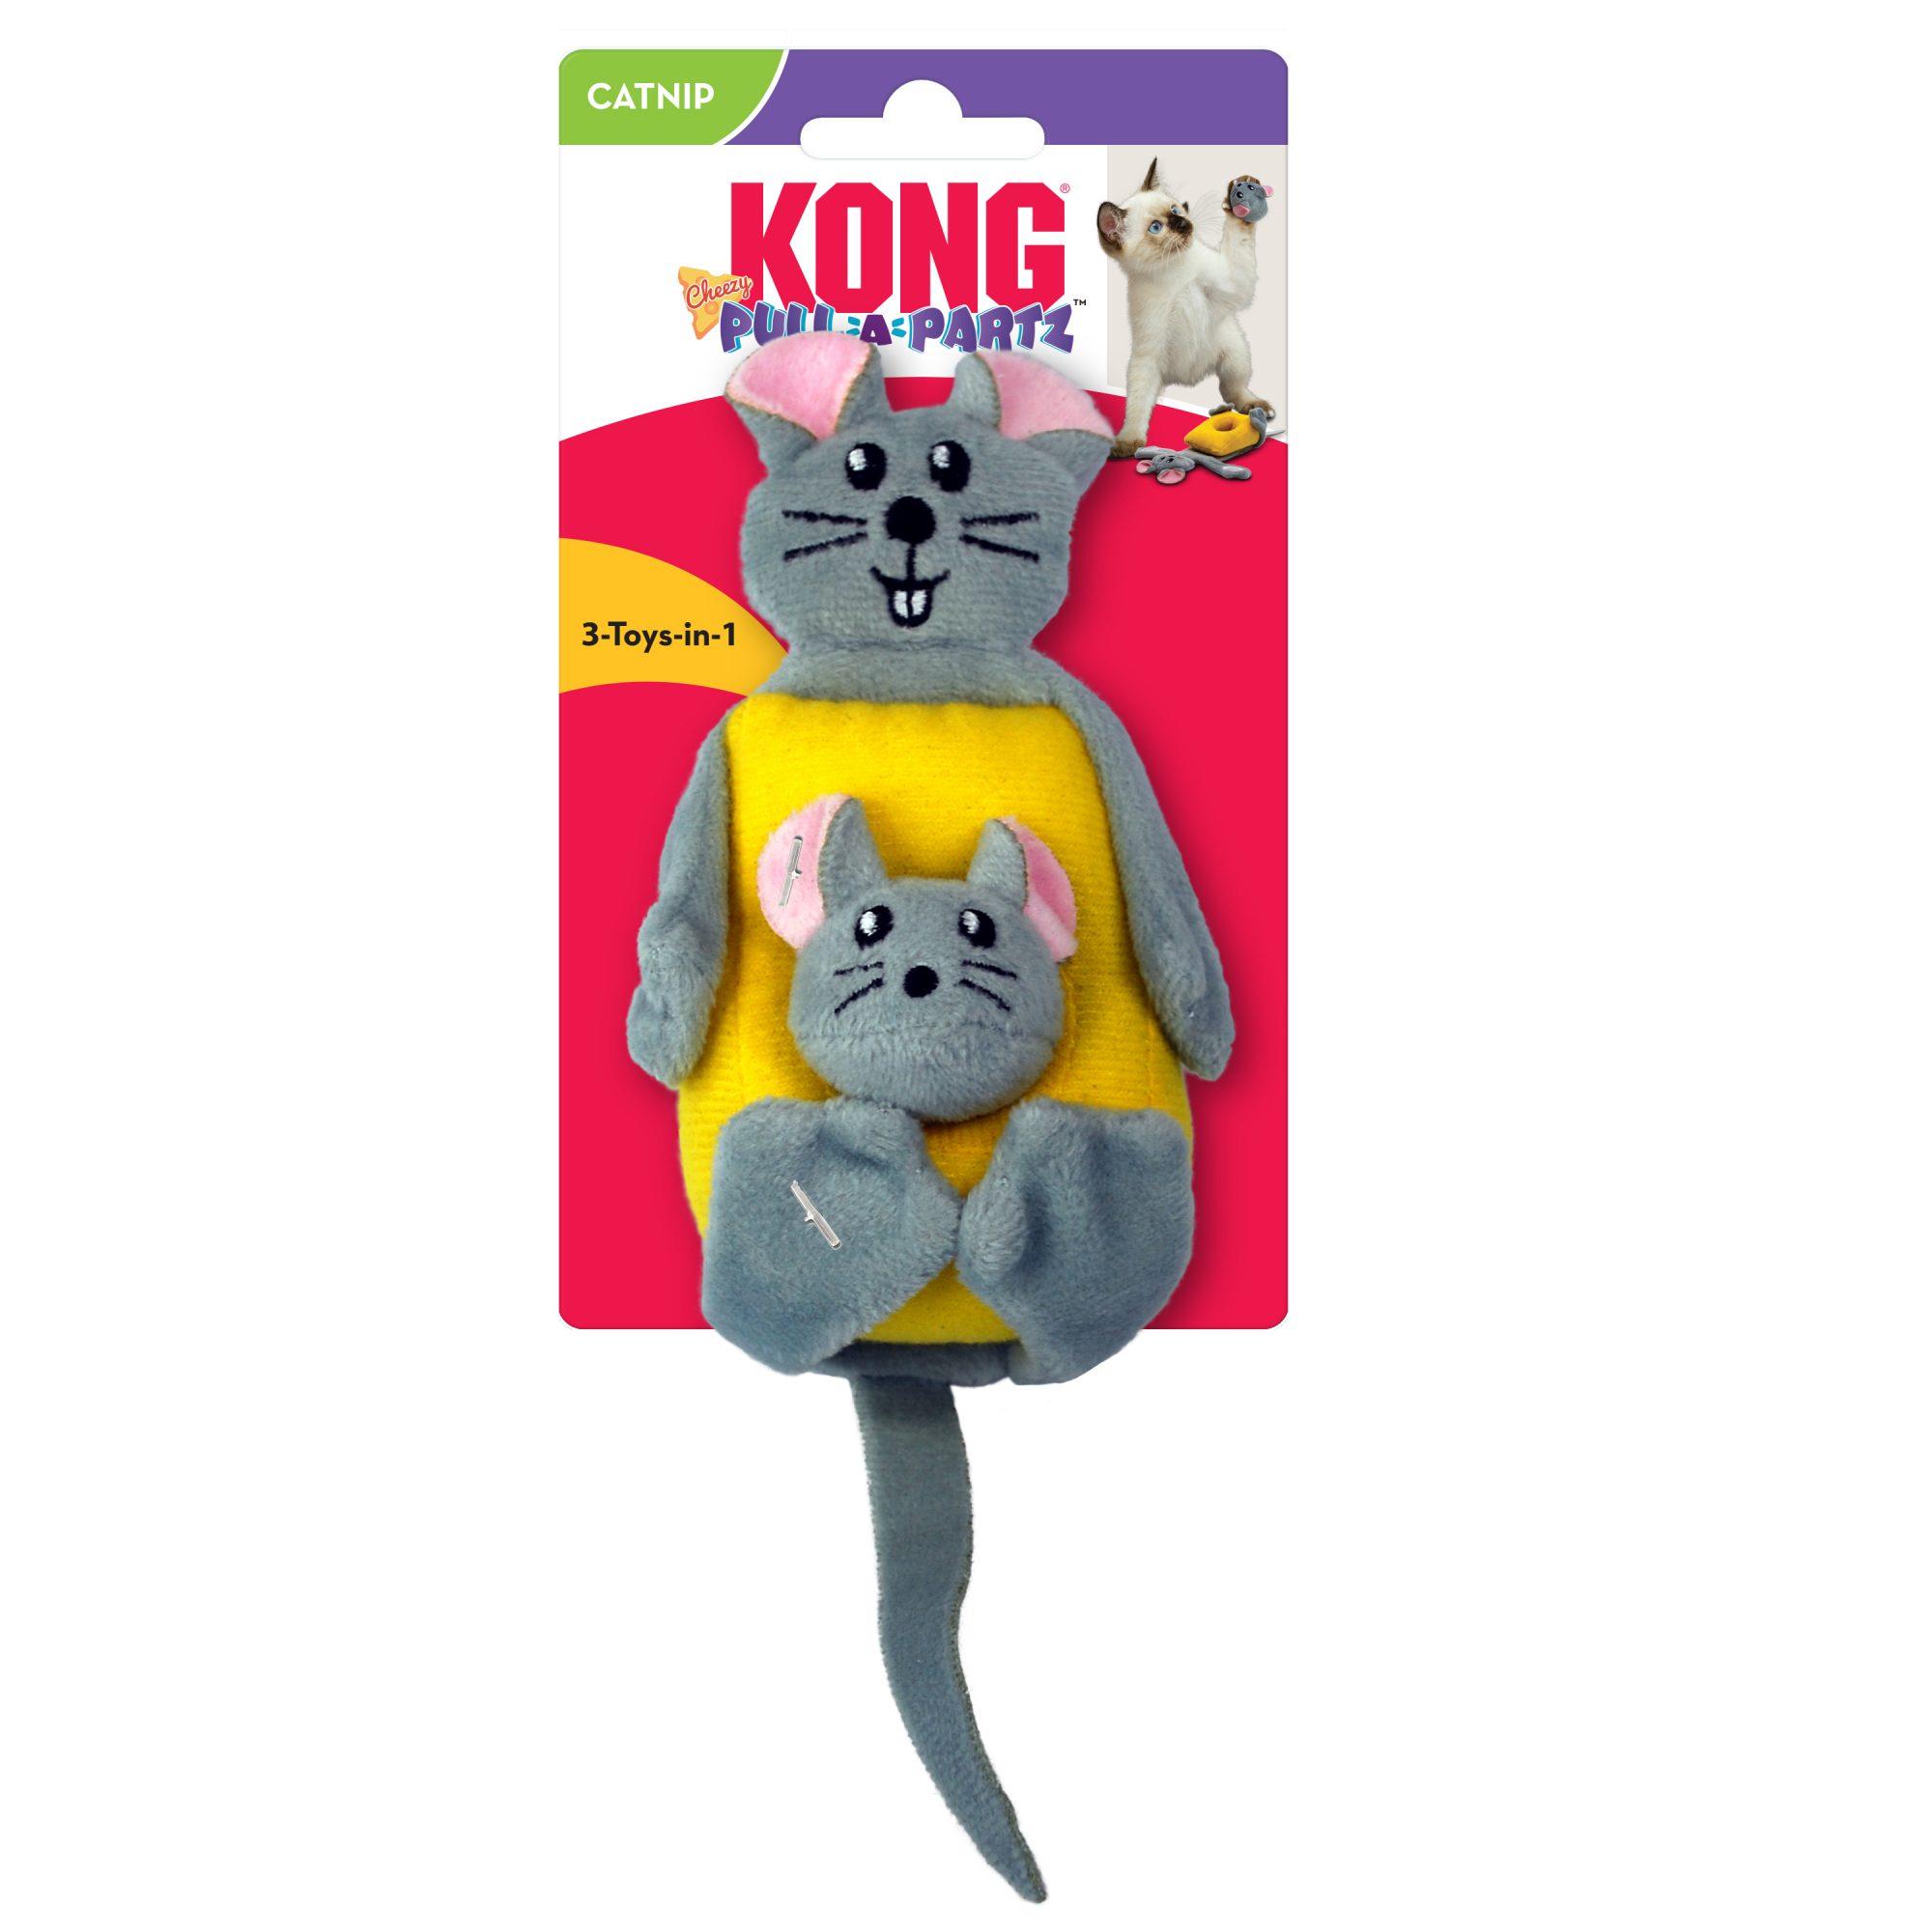 KONG Pull-a-partz Cheezy für Katzen